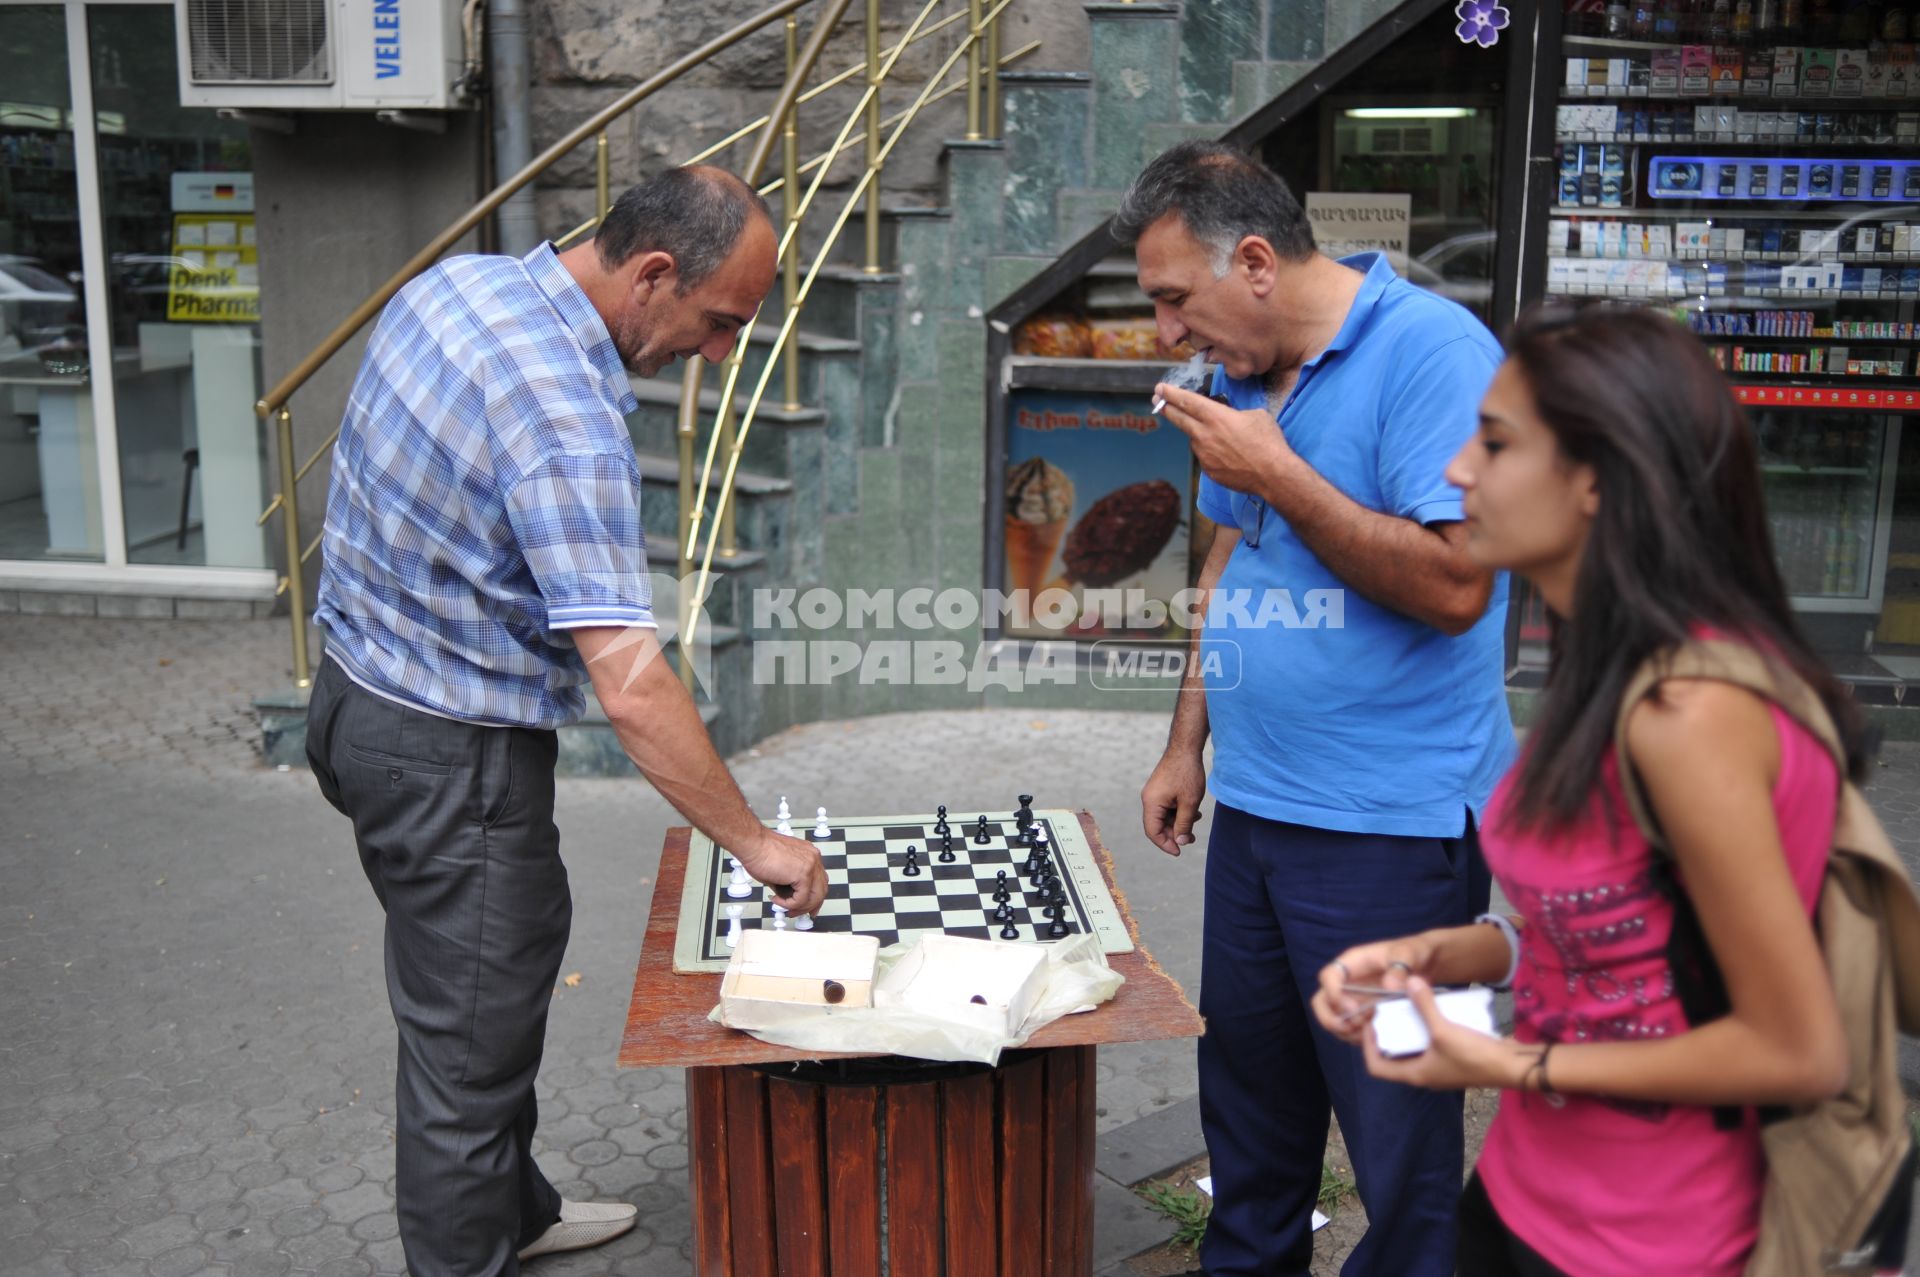 Армения, Ереван. Мужчины играют в шахматы на улице.